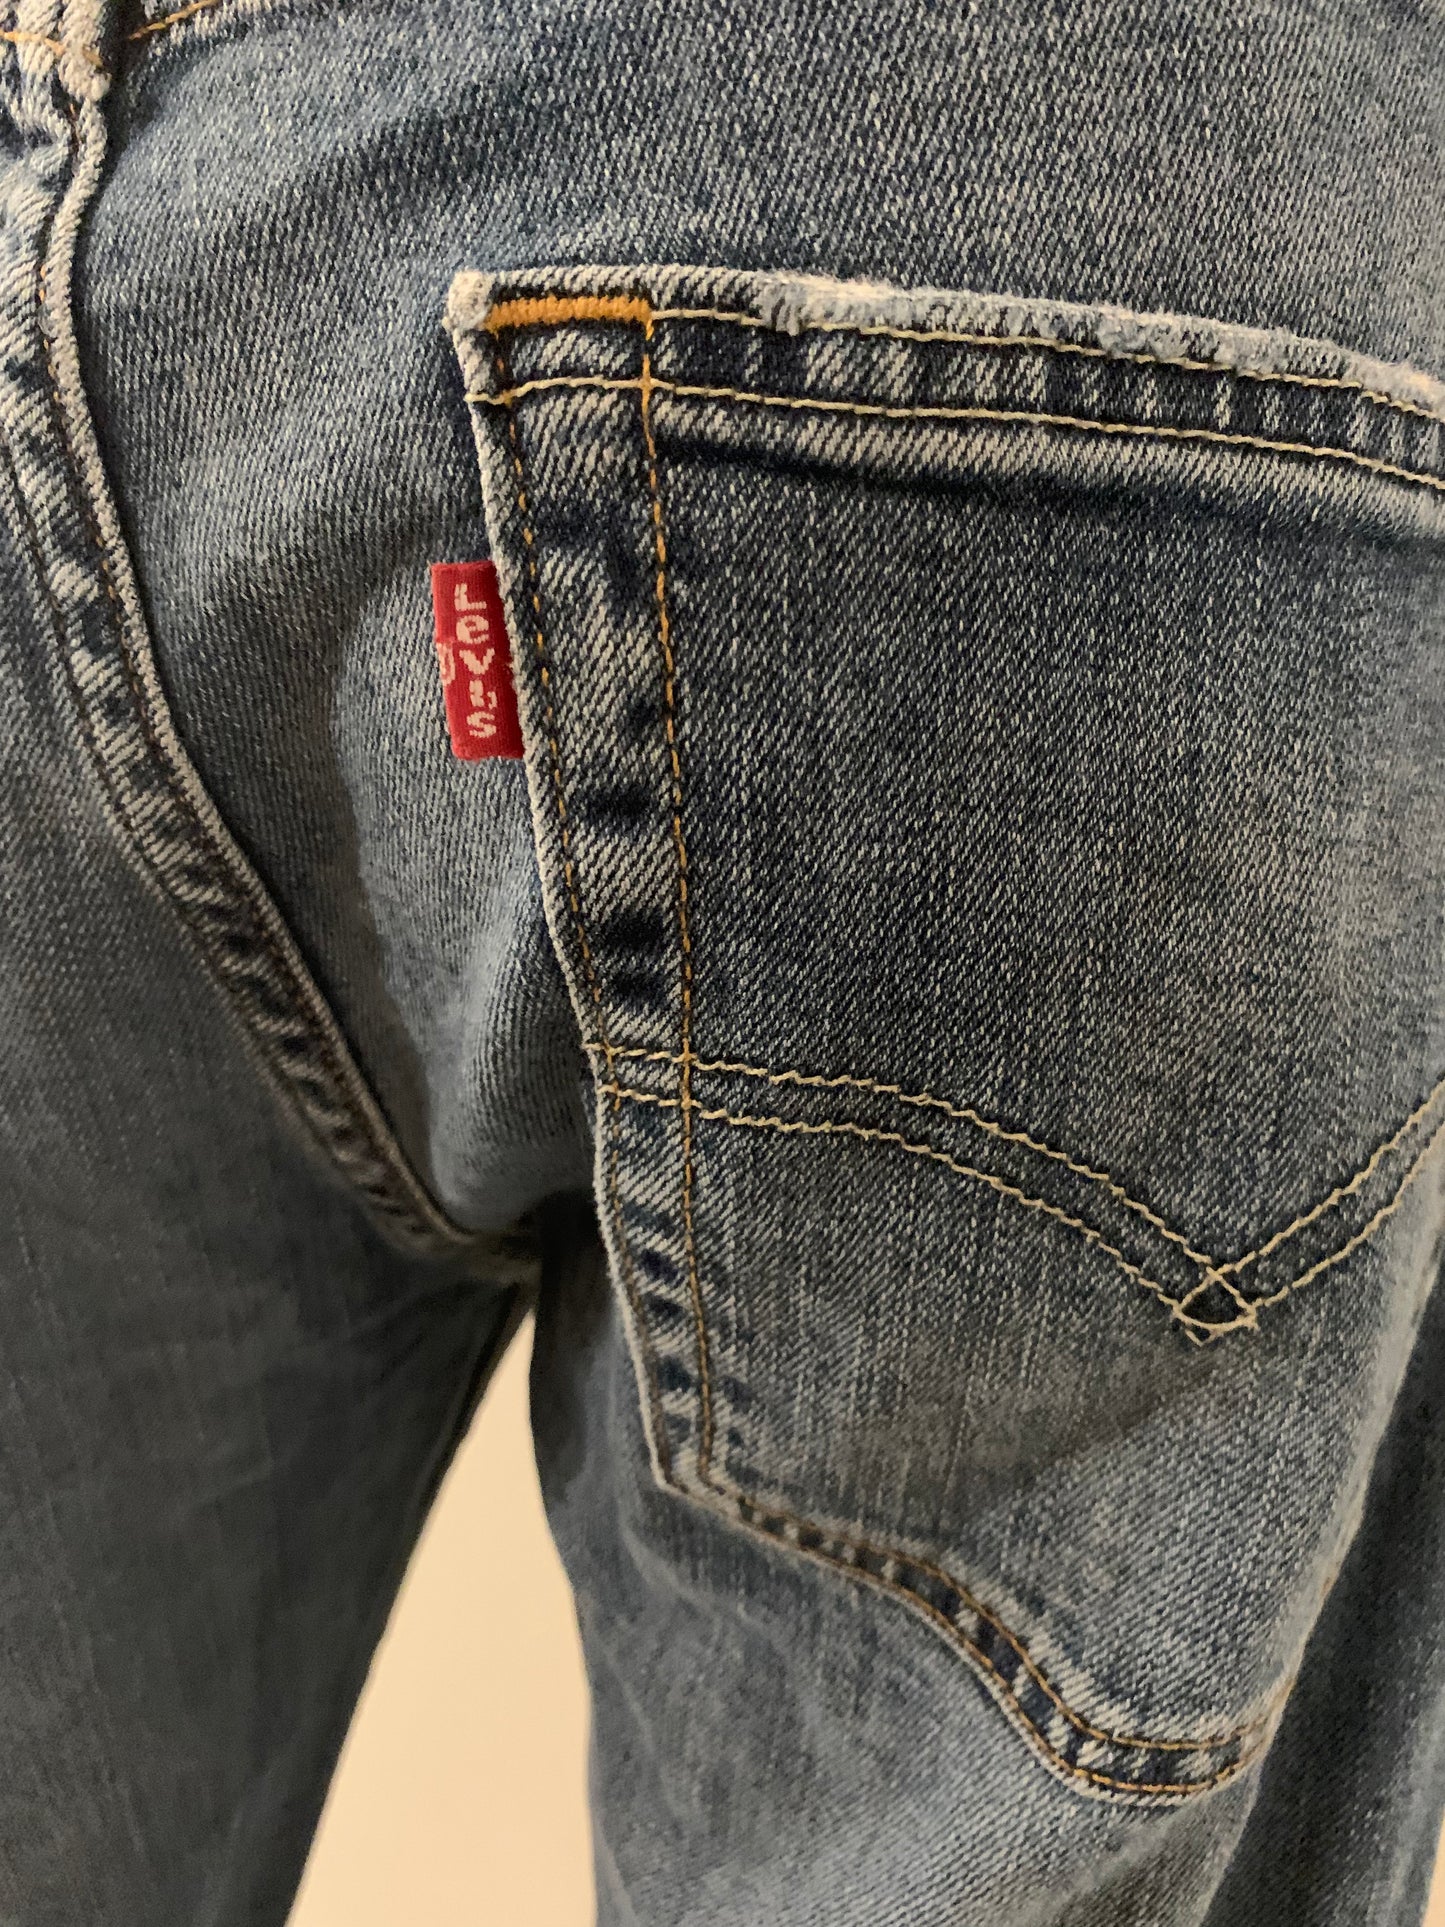 Levi’s 513 Vintage Jeans